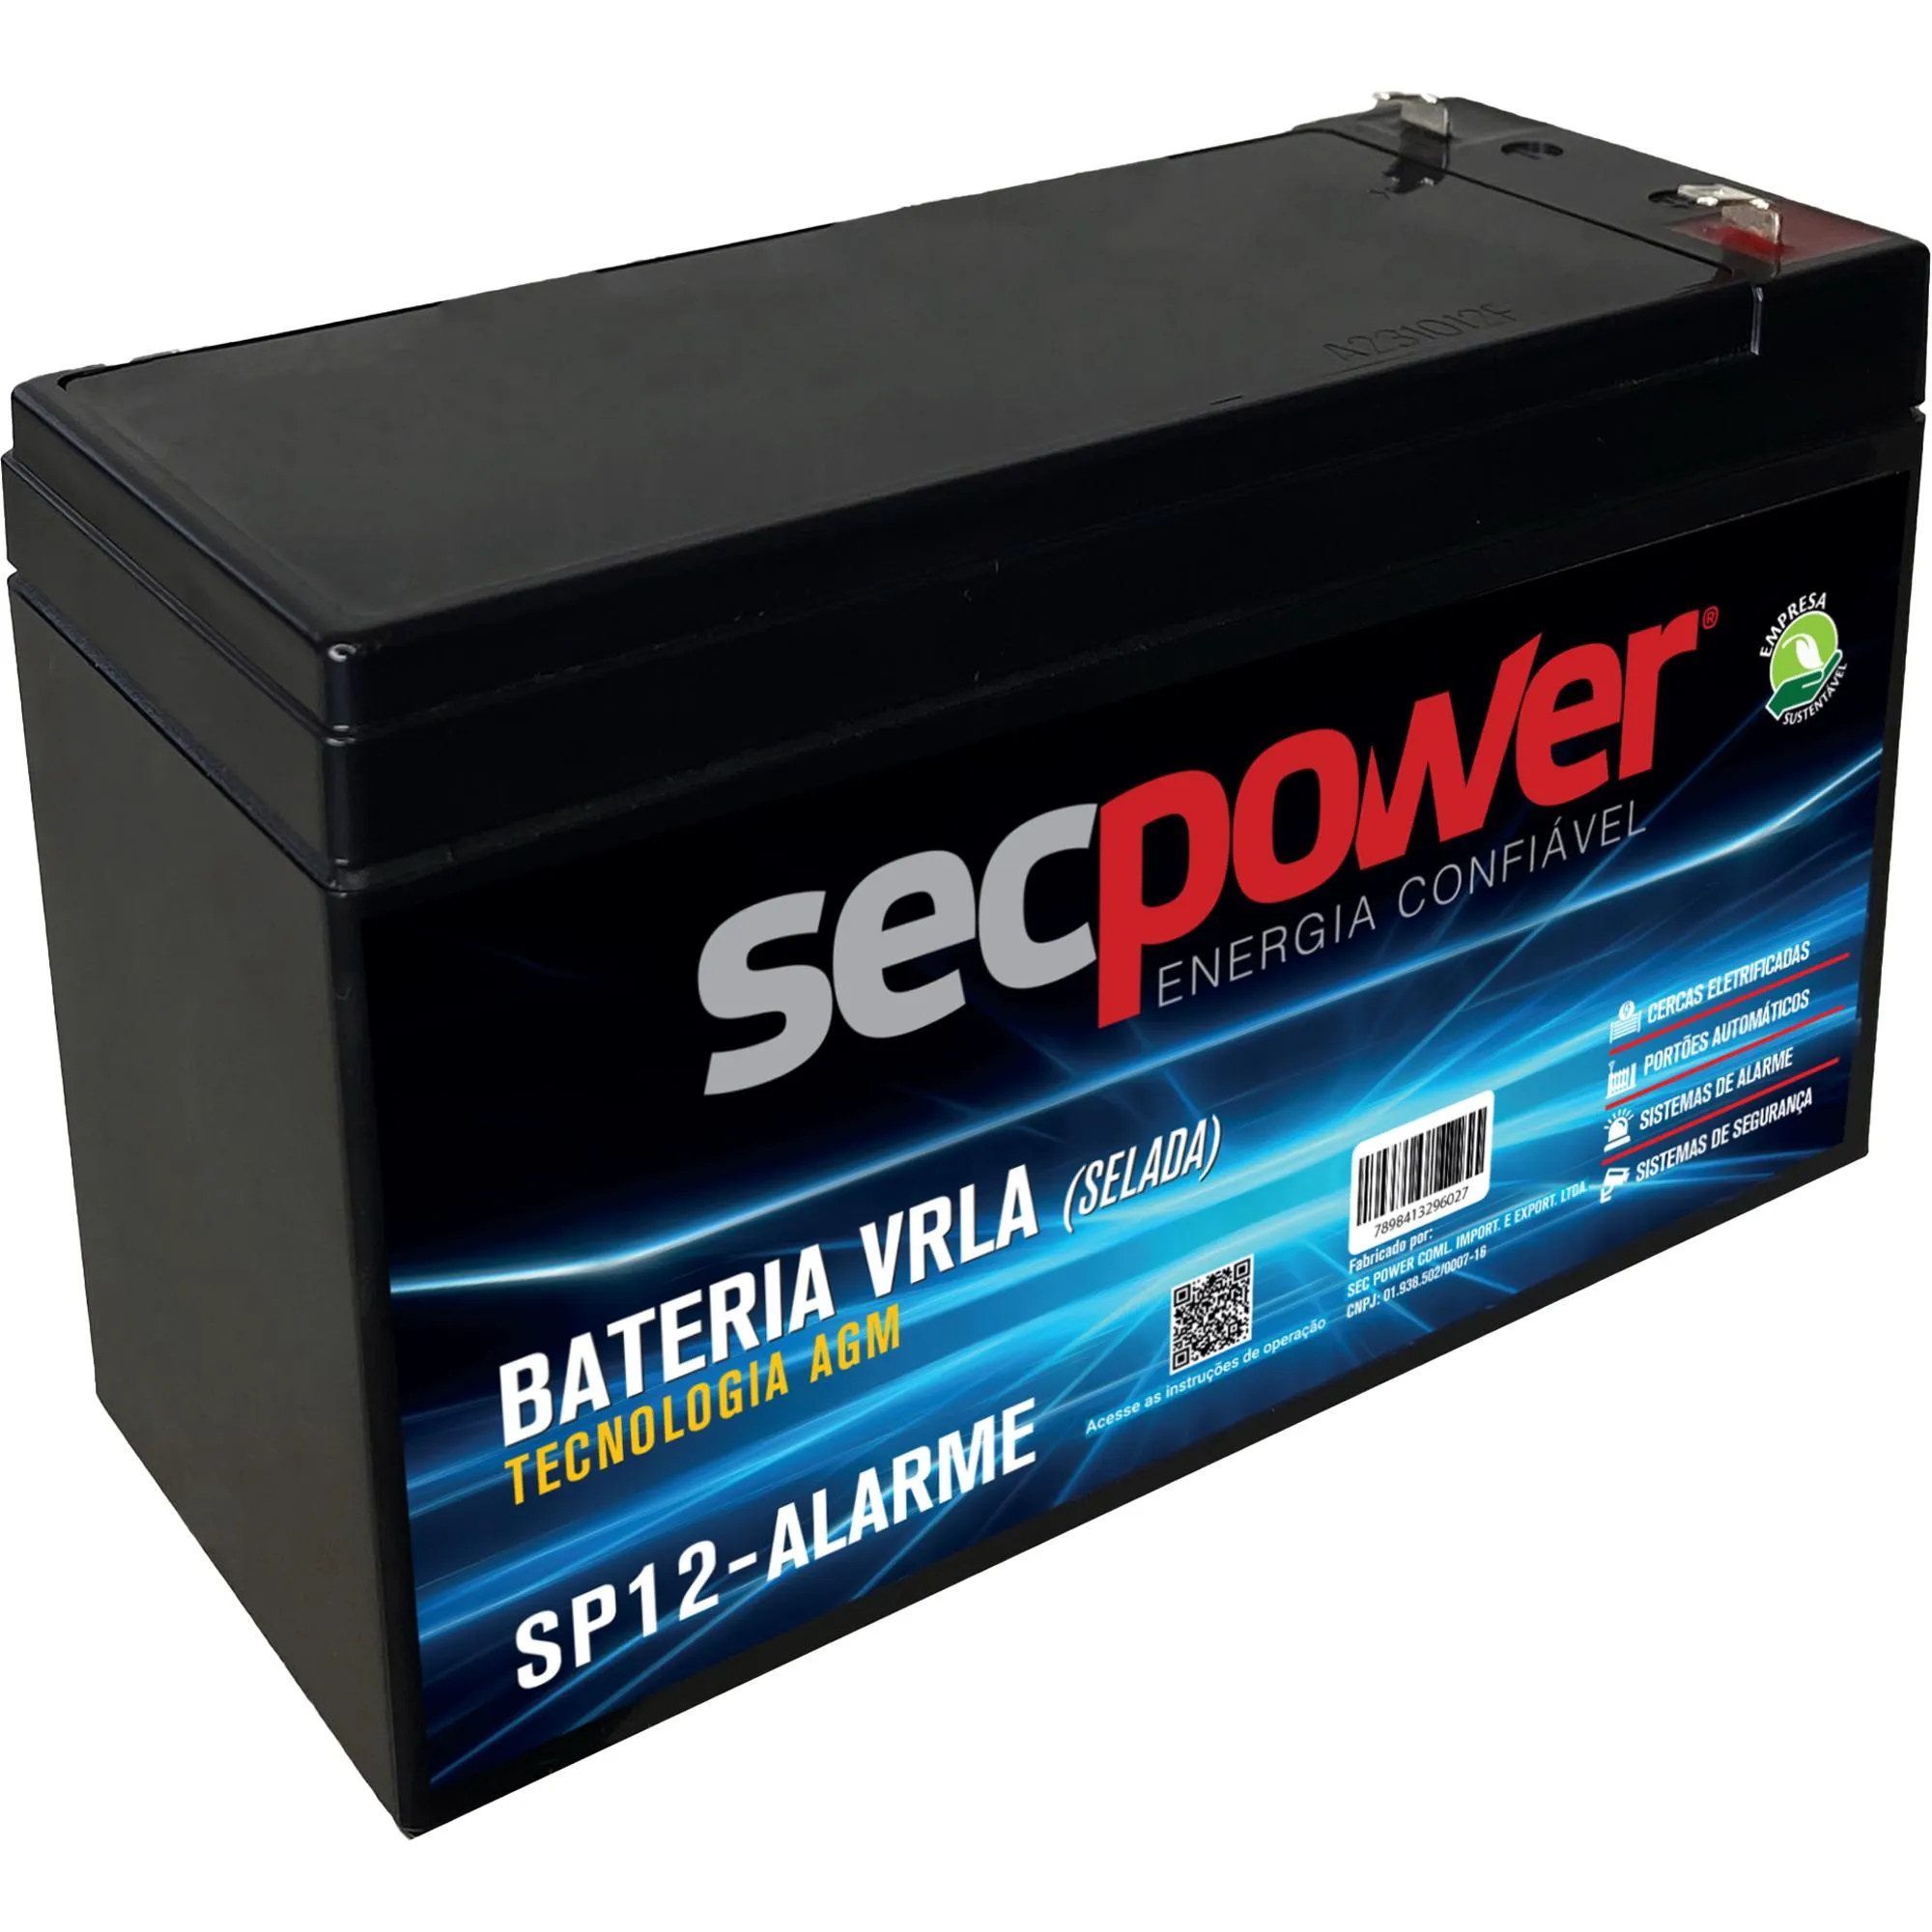 Bateria Selada 12V P12-Alarme SecPower (83942)